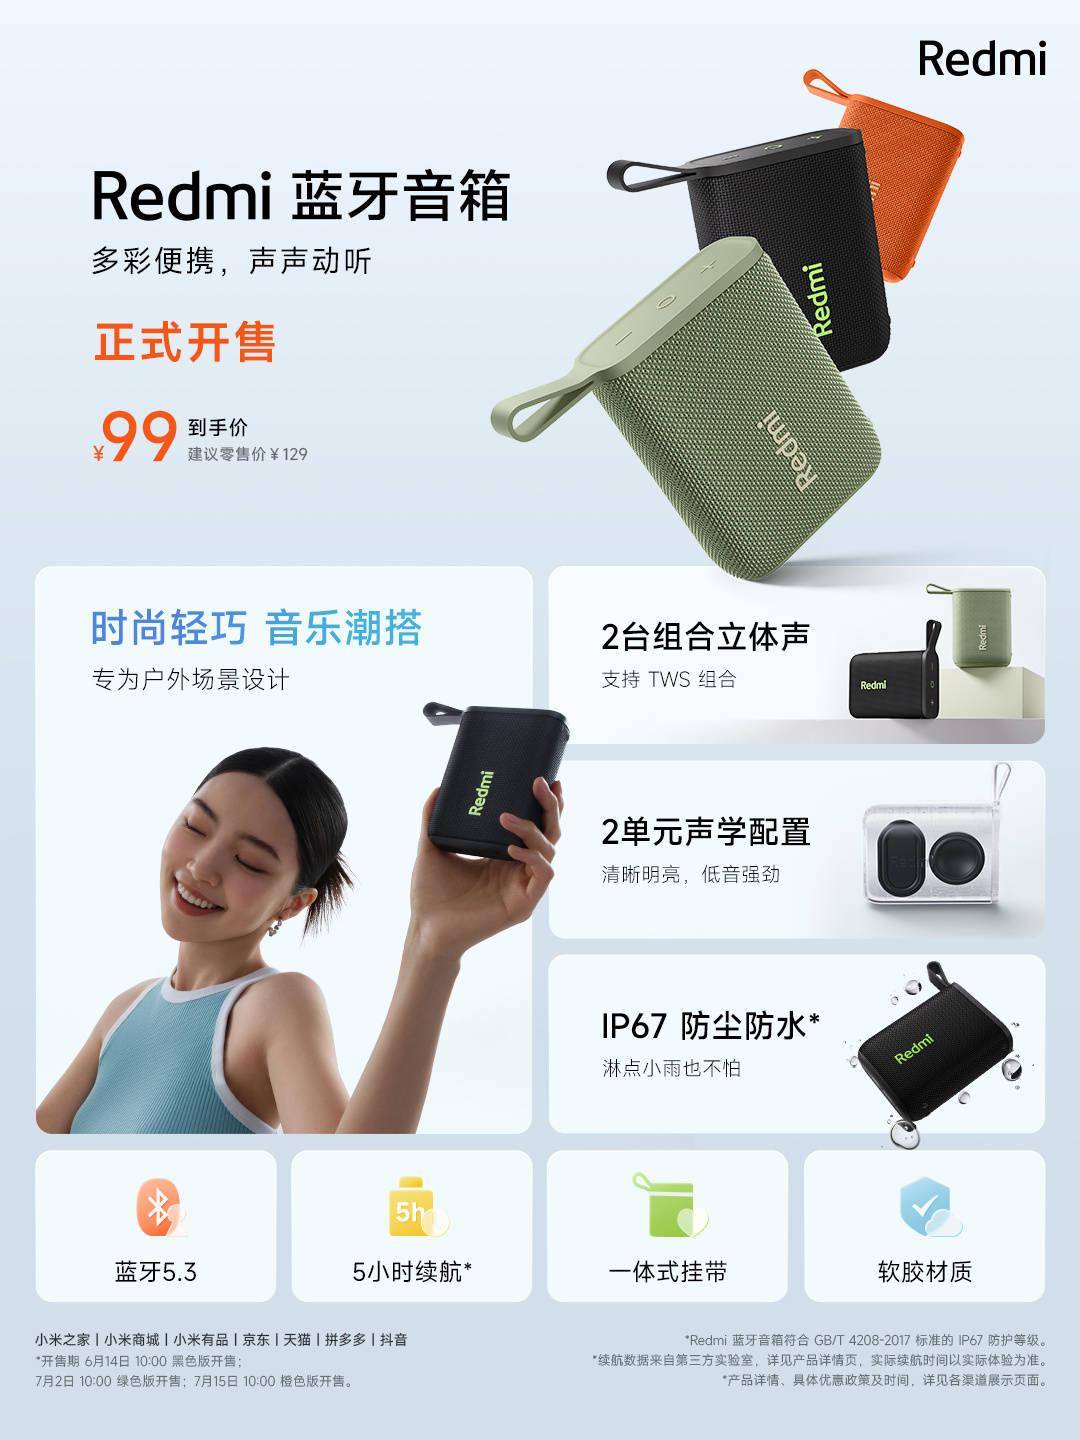 小米Redmi蓝牙音箱黑色版今日首销 支持IP67防尘防水